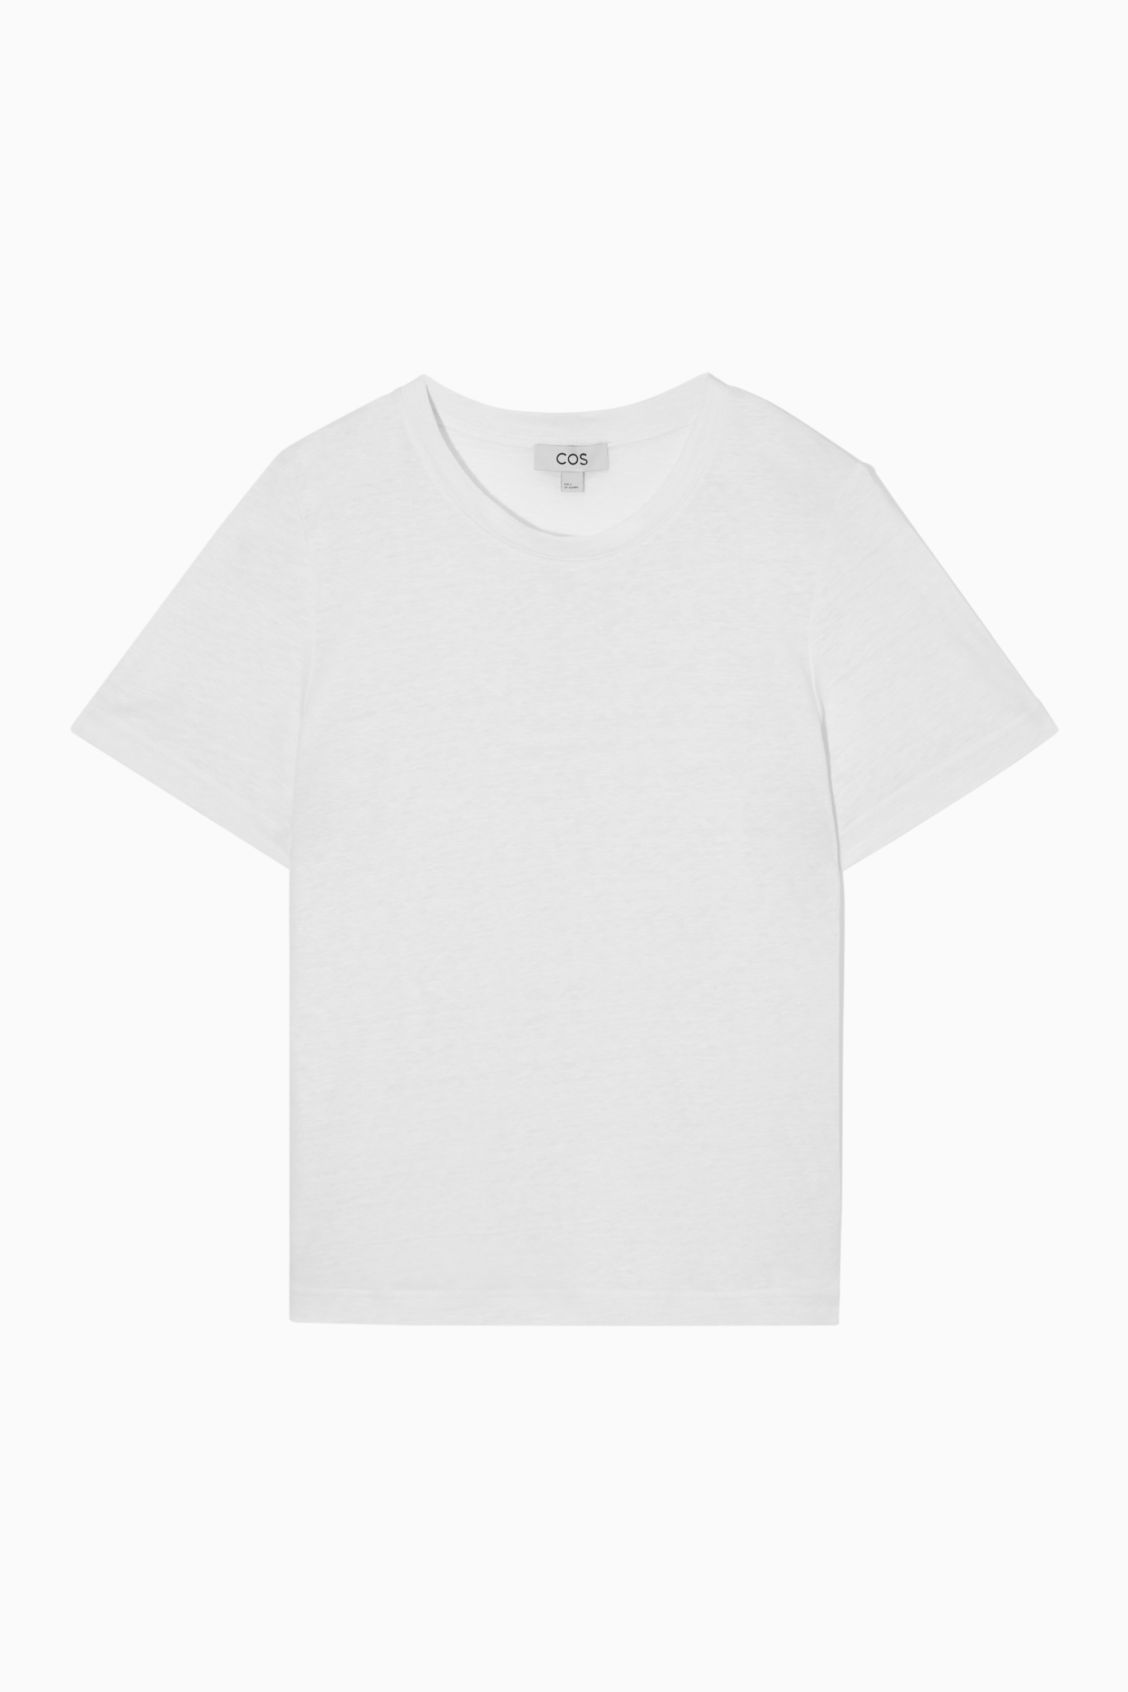 COS + Linen T-Shirt